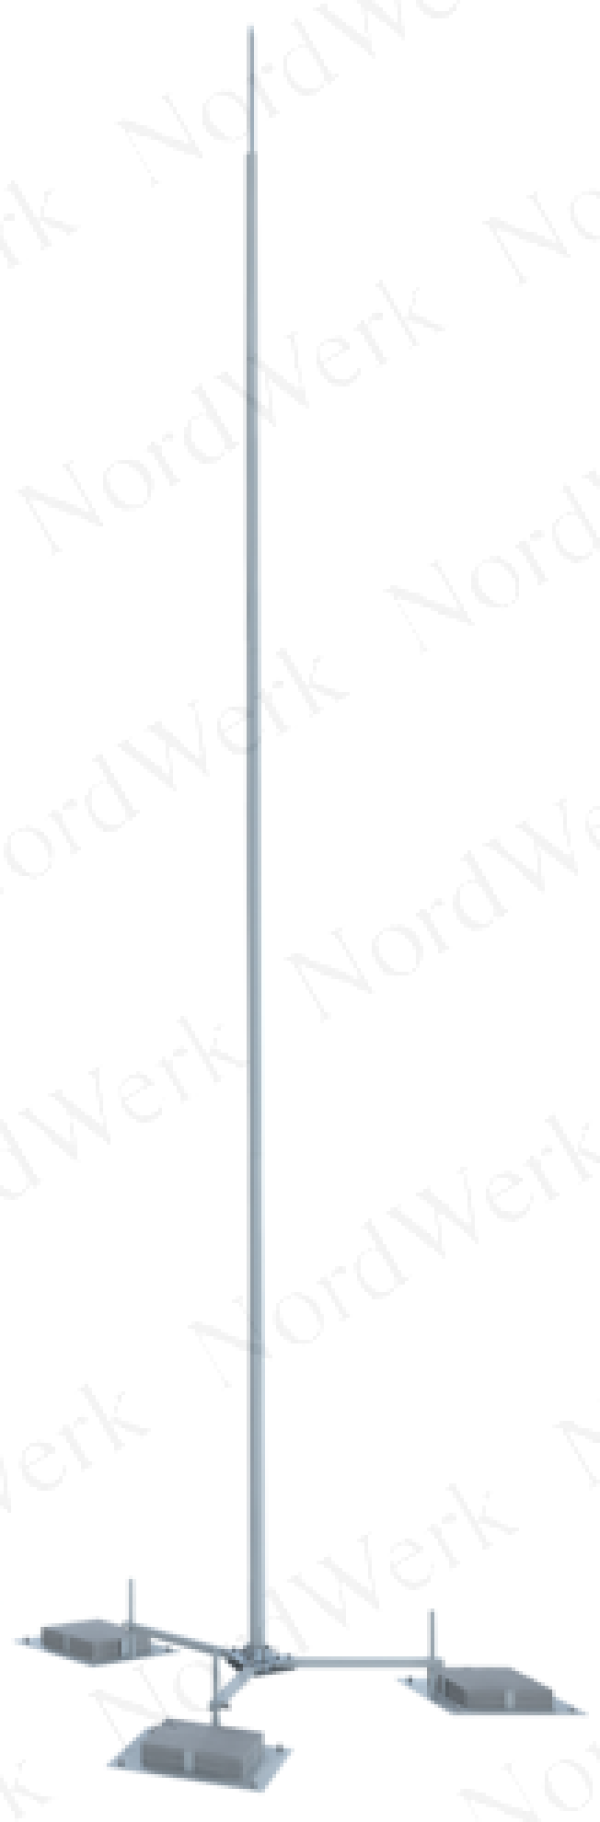 NordWerk МСАА-М-3,6-Т – Молниеотвод высотой 3,6 метров для активных молниеприемников (алюминий; с треногой)